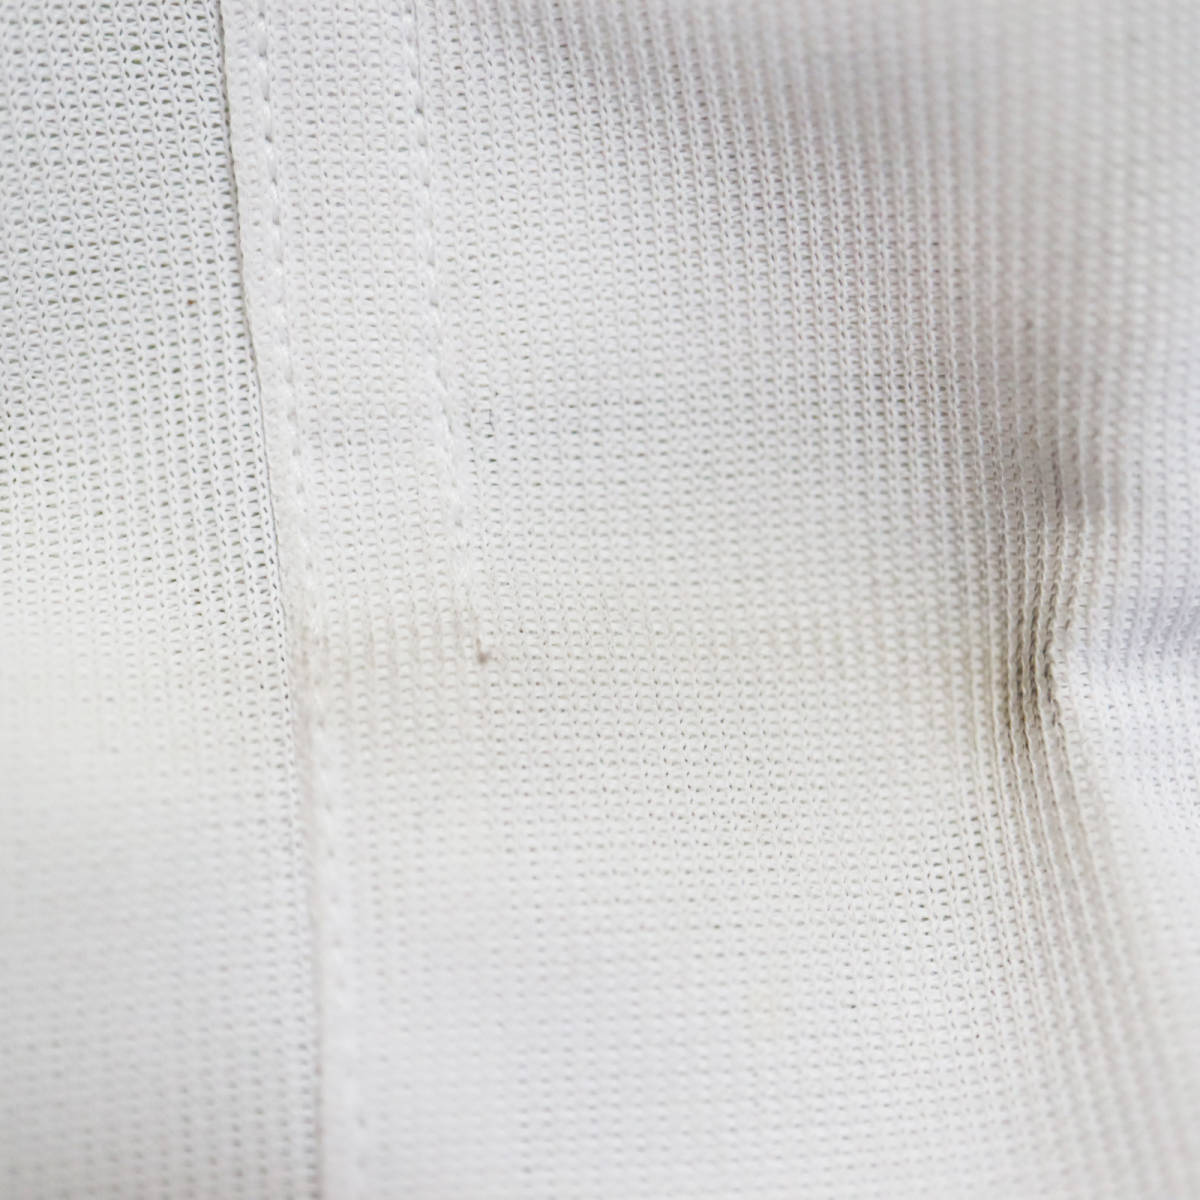 rm1391 Yシャツ 半袖 スクールシャツ 白シャツ 首回り42 メンズ 紳士 ポリ80綿20 未使用 新品タグあり 長期保管品の画像7